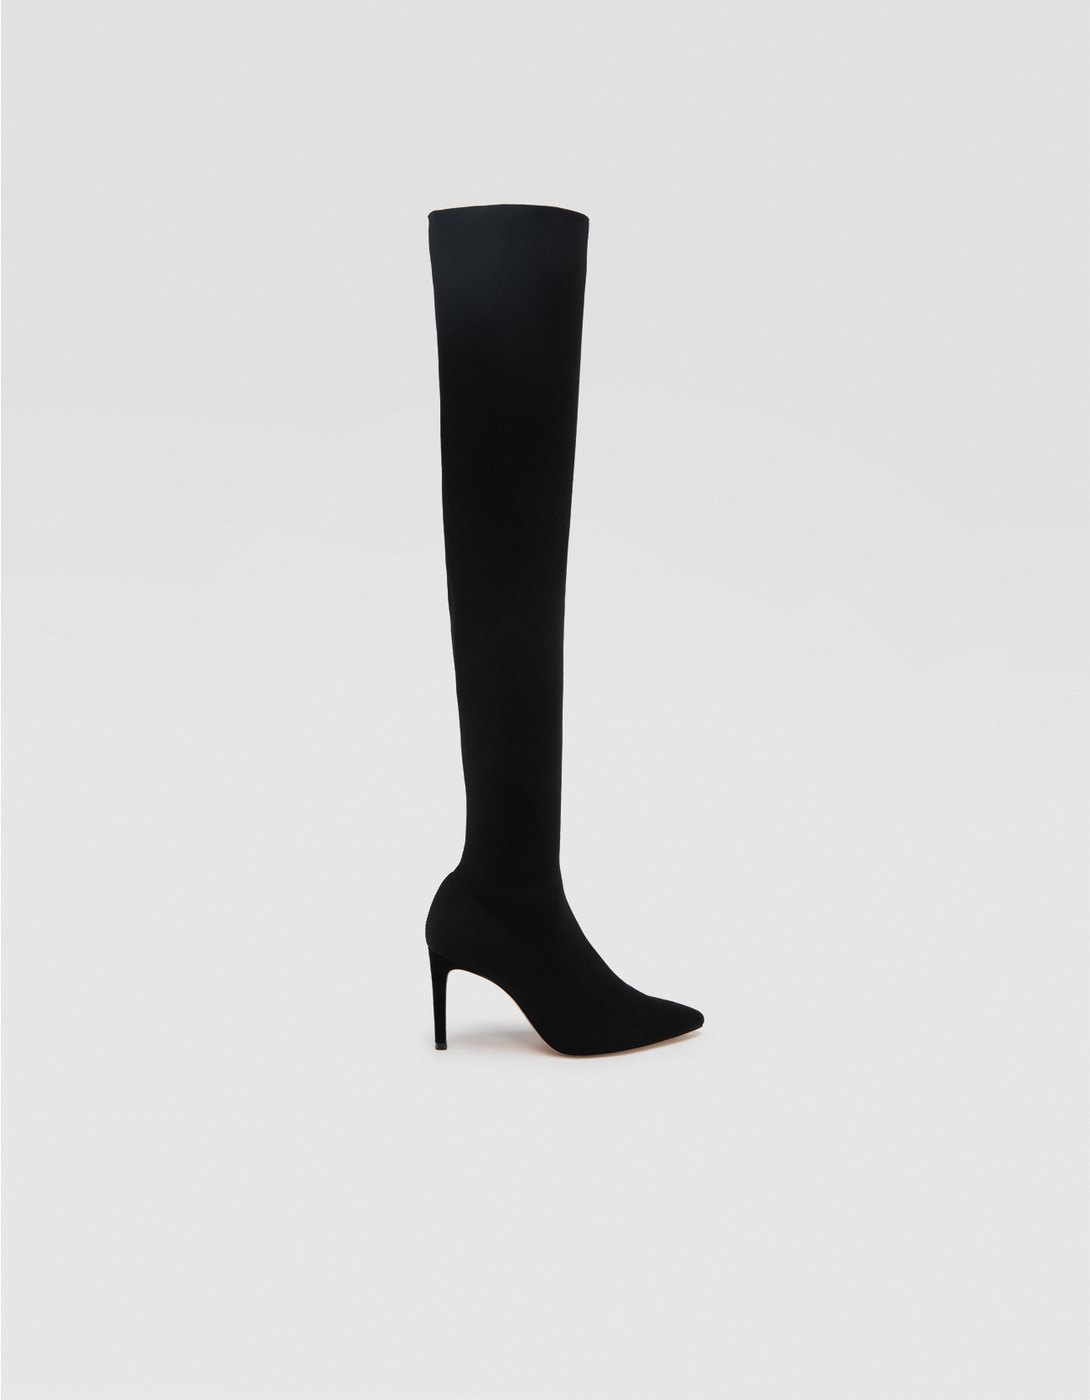 Black high-heel over-the-knee boots in 